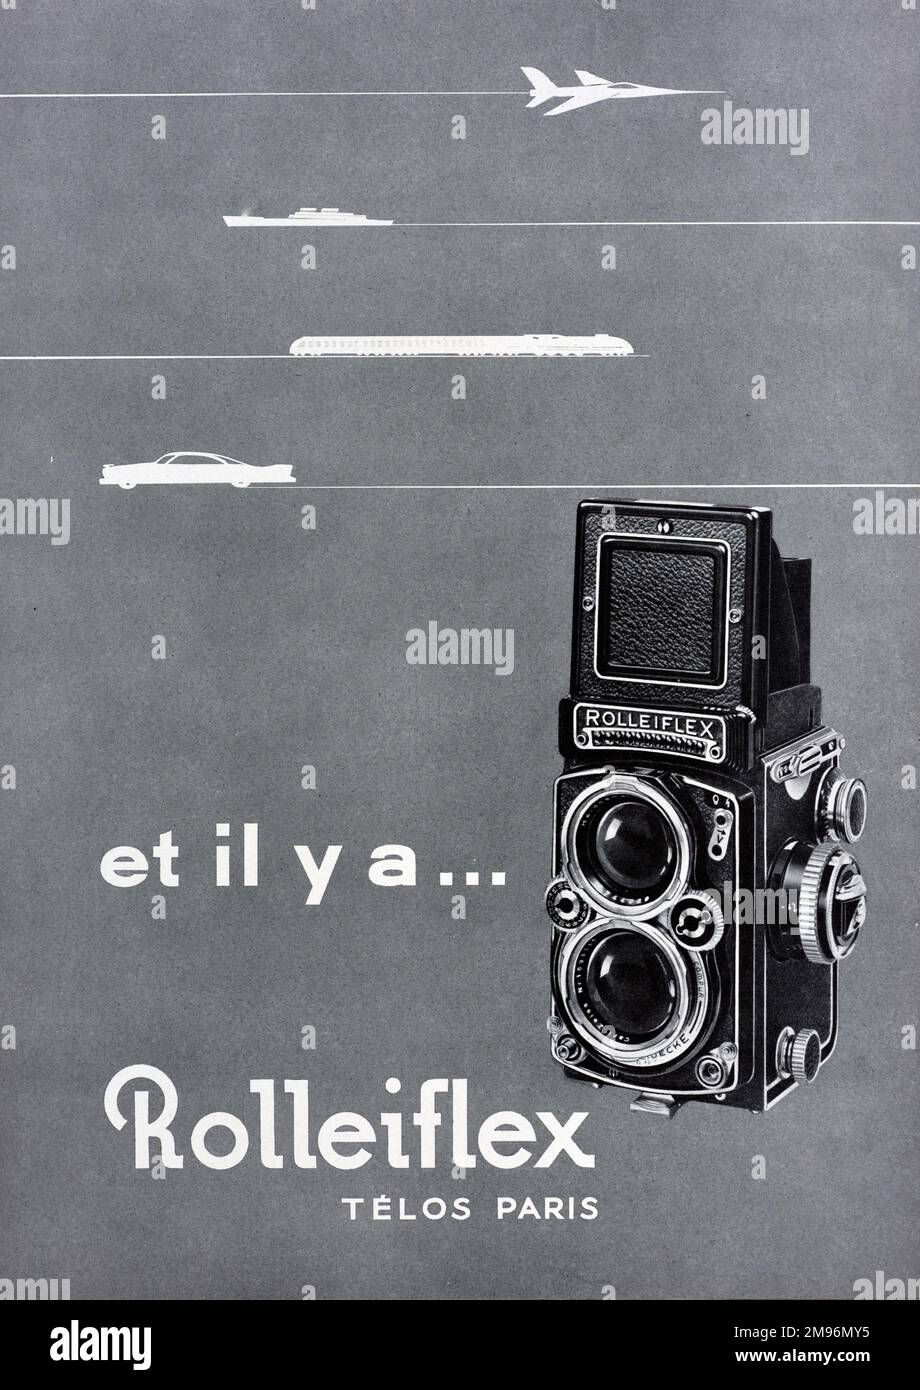 Rolleiflex Anuncio 1957. Vintage o antiguo anuncio, publicidad, publicidad o ilustración para Vintage Rolleiflex cámara 1957 Foto de stock